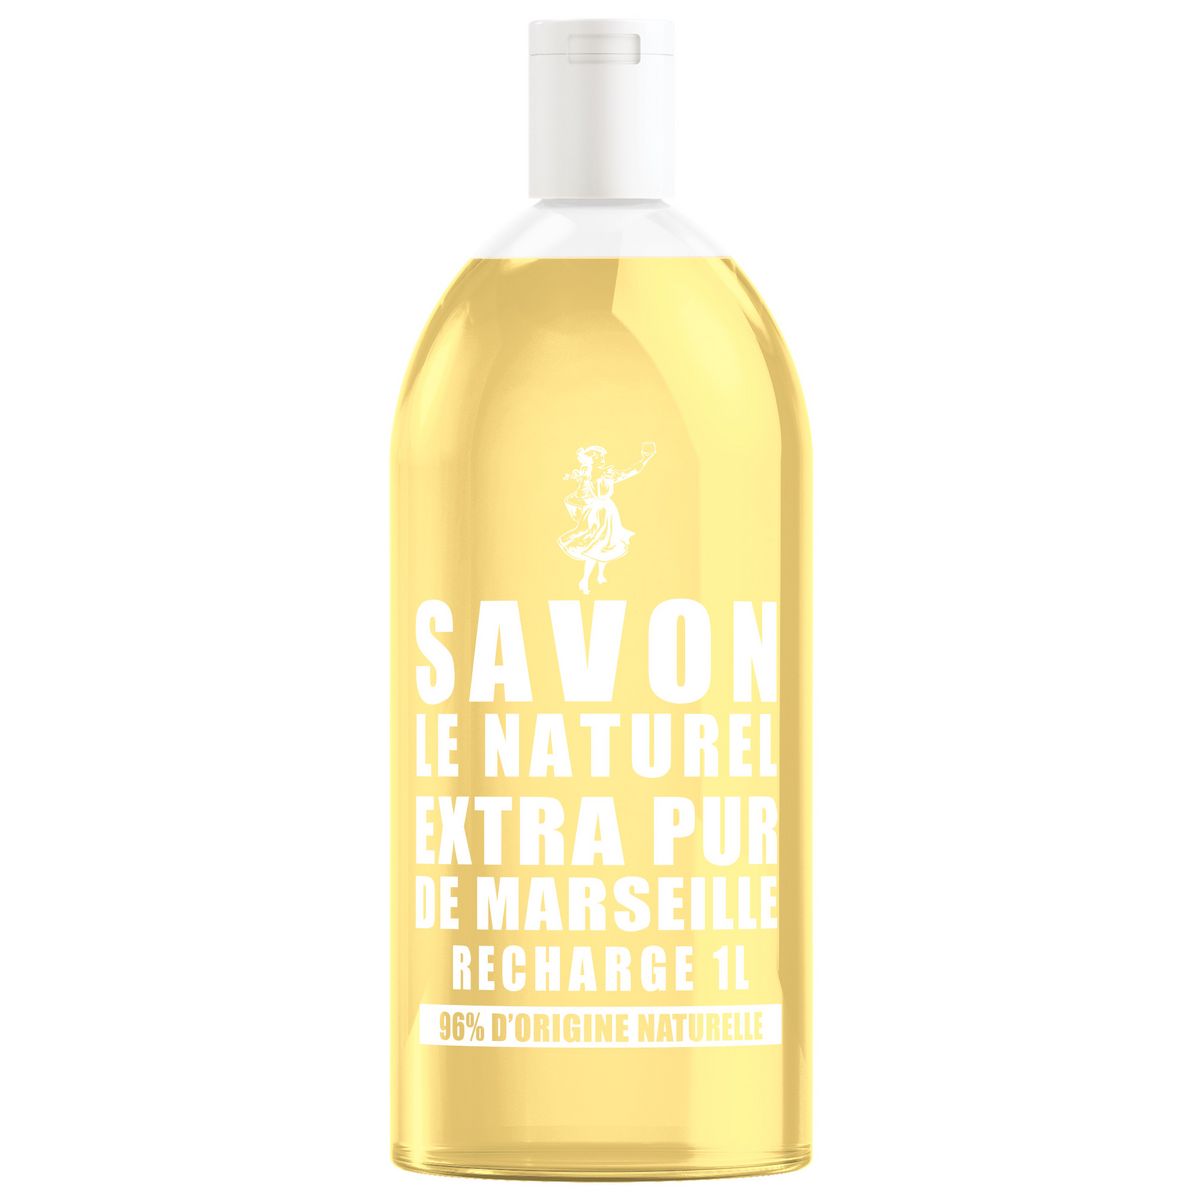 SAVON LE NATUREL Recharge savon liquide mains extra pur de Marseille 1l